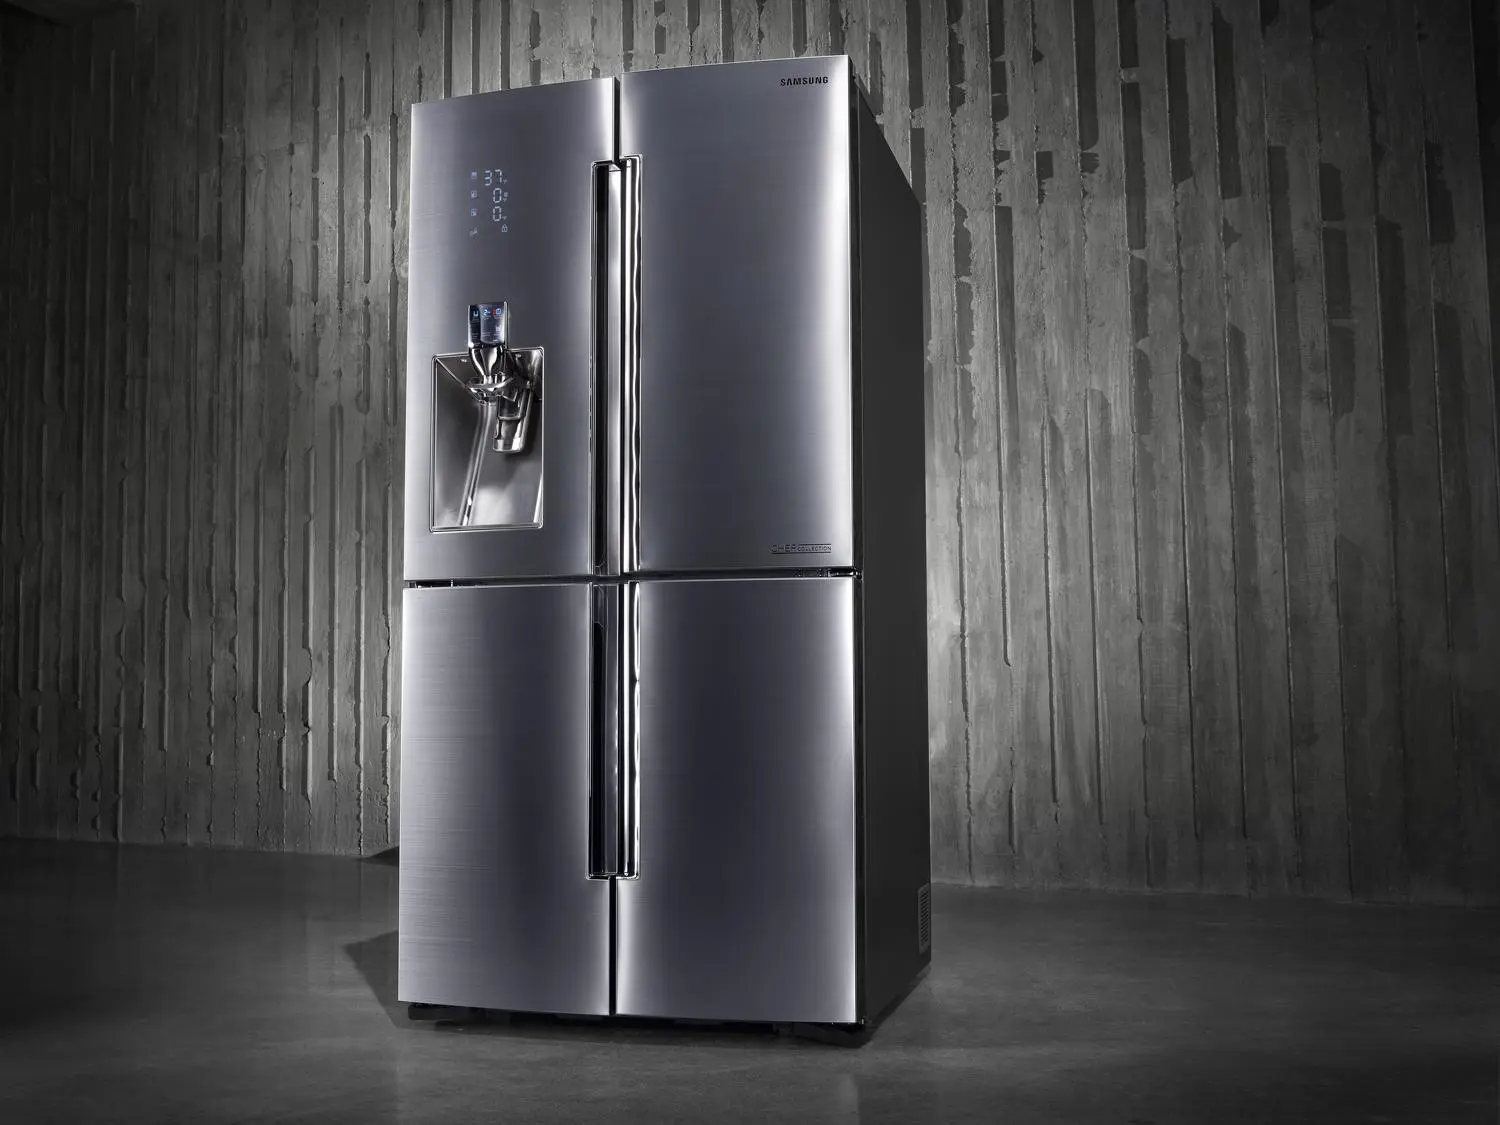 Холодильники новые модели. Холодильник Haier HRF-541dm7ru. Холодильник Samsung rsj1kers. Многодверный Haier hb18fgwaaaru. Холодильник (Side-by-Side) LG GC-q247cbdc.